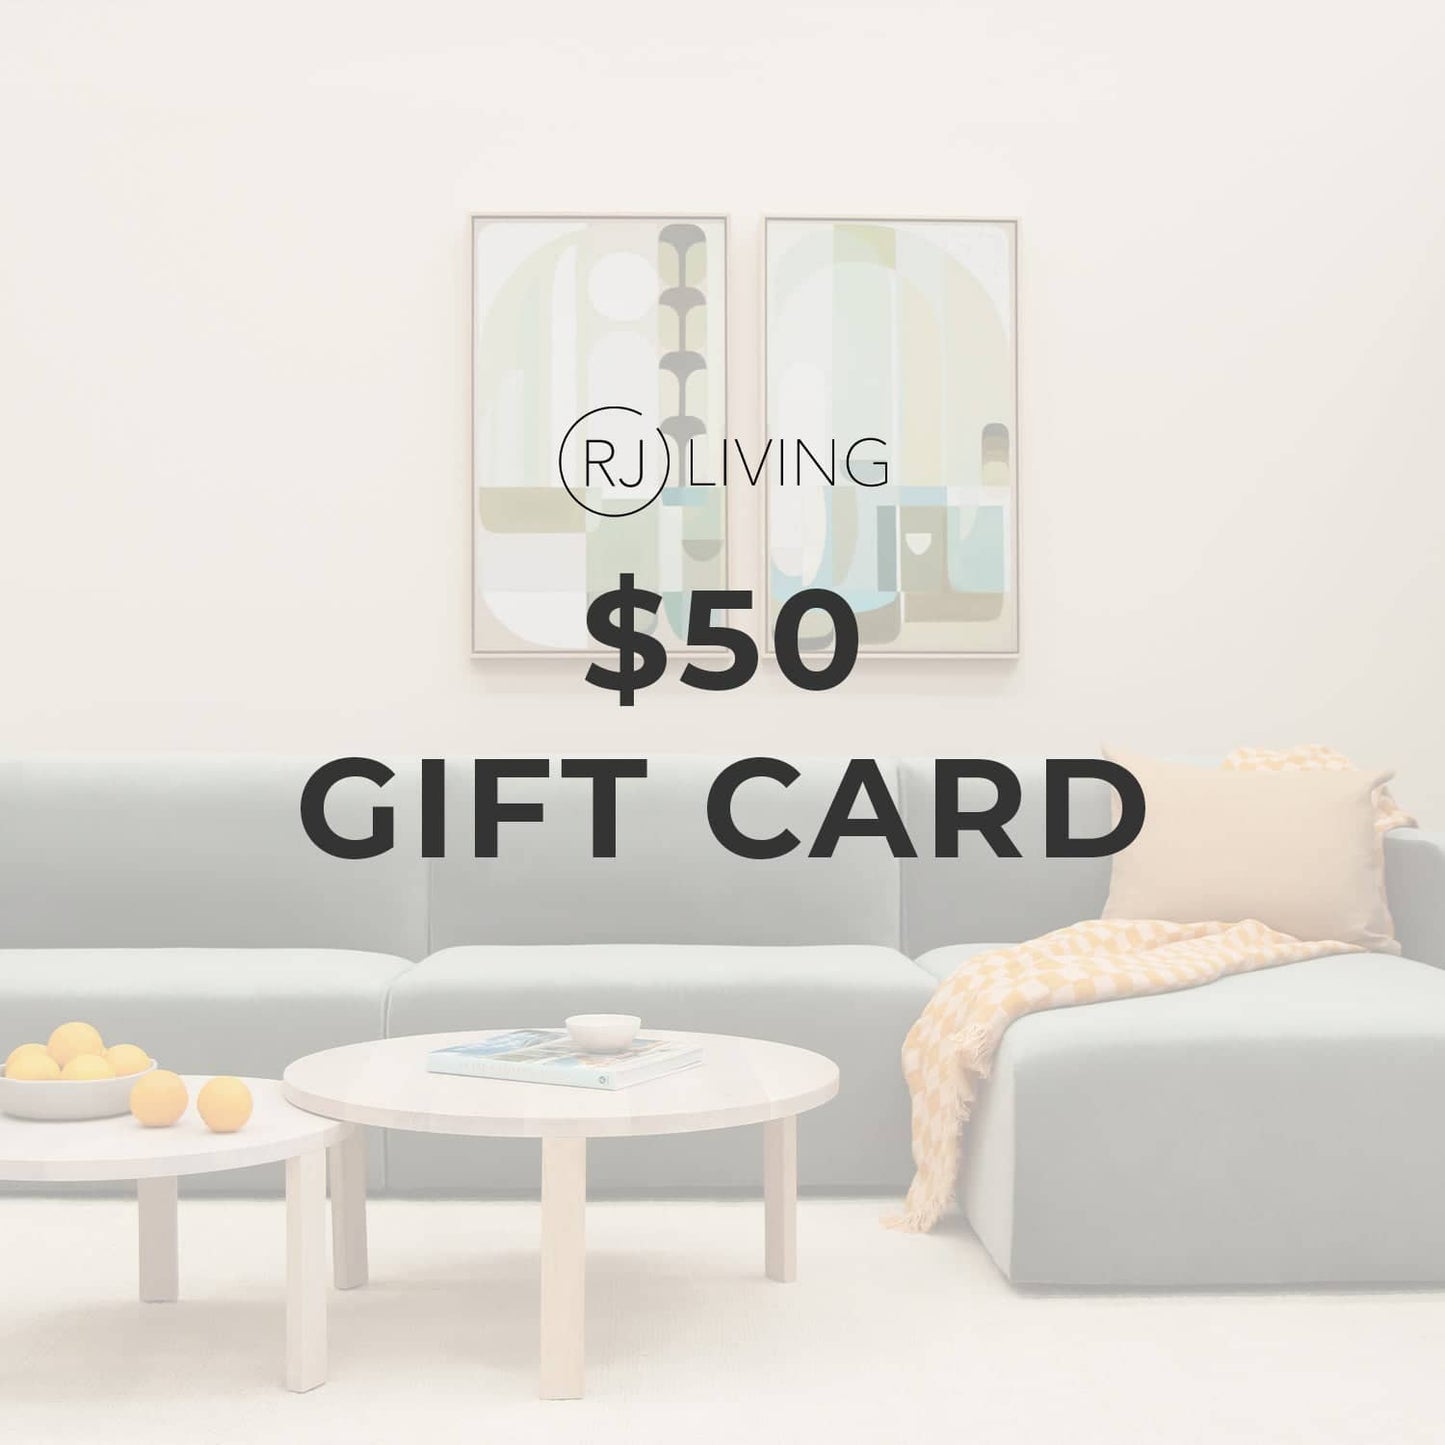 $50 RJ Living Gift Card